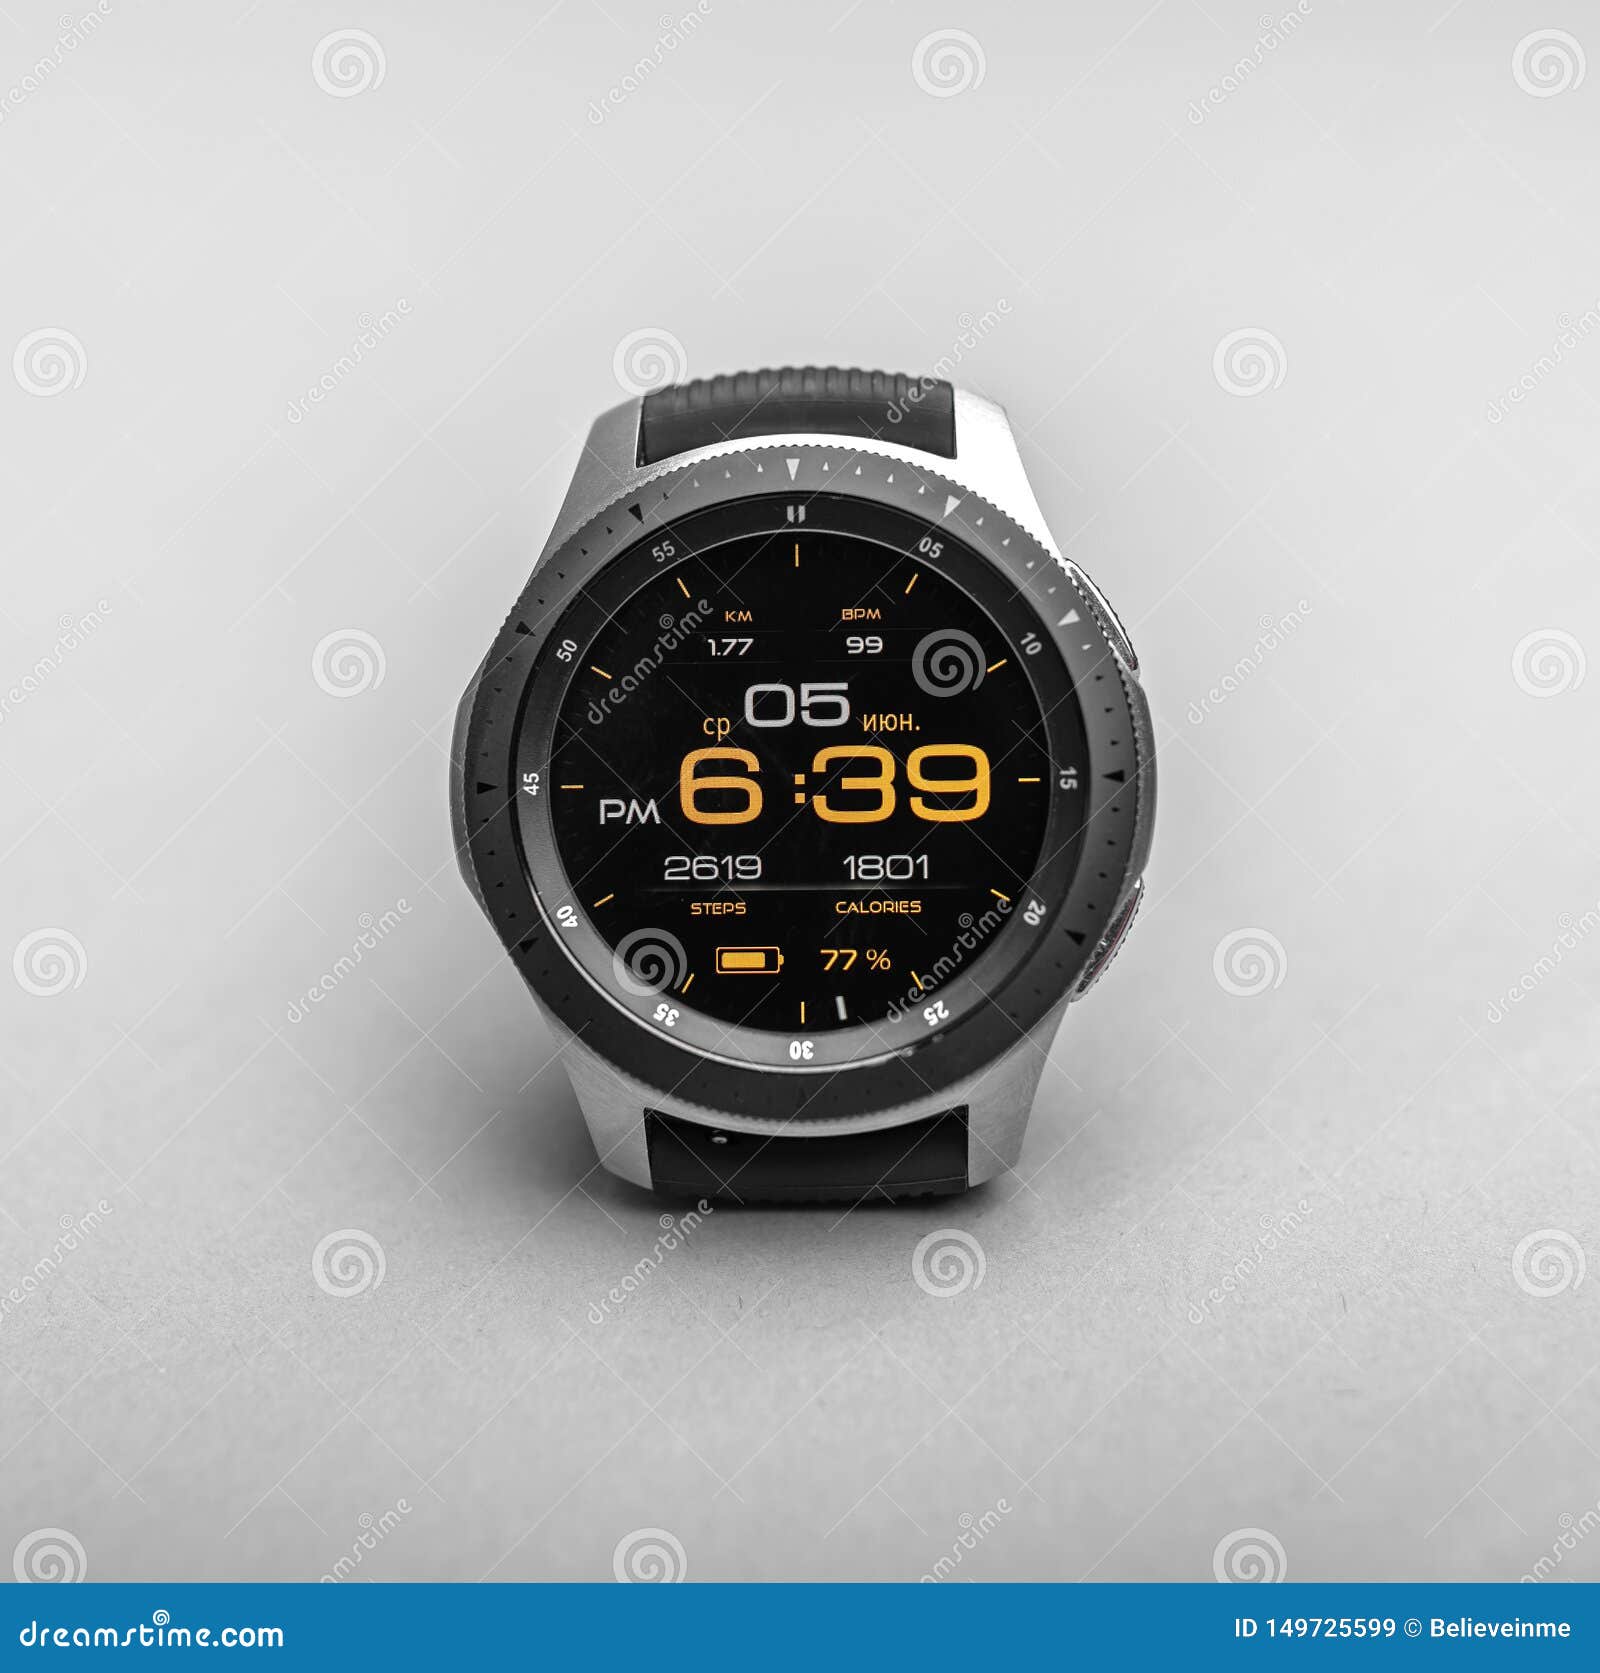 Samsung Galaxy Watch được thiết kế để mang lại trải nghiệm đích thực của một chiếc đồng hồ thông minh kết nối. Với các tính năng như đo nhịp tim, theo dõi giấc ngủ và hôn mê thông minh, smartwatch giúp giảm căng thẳng và nâng cao sức khỏe.